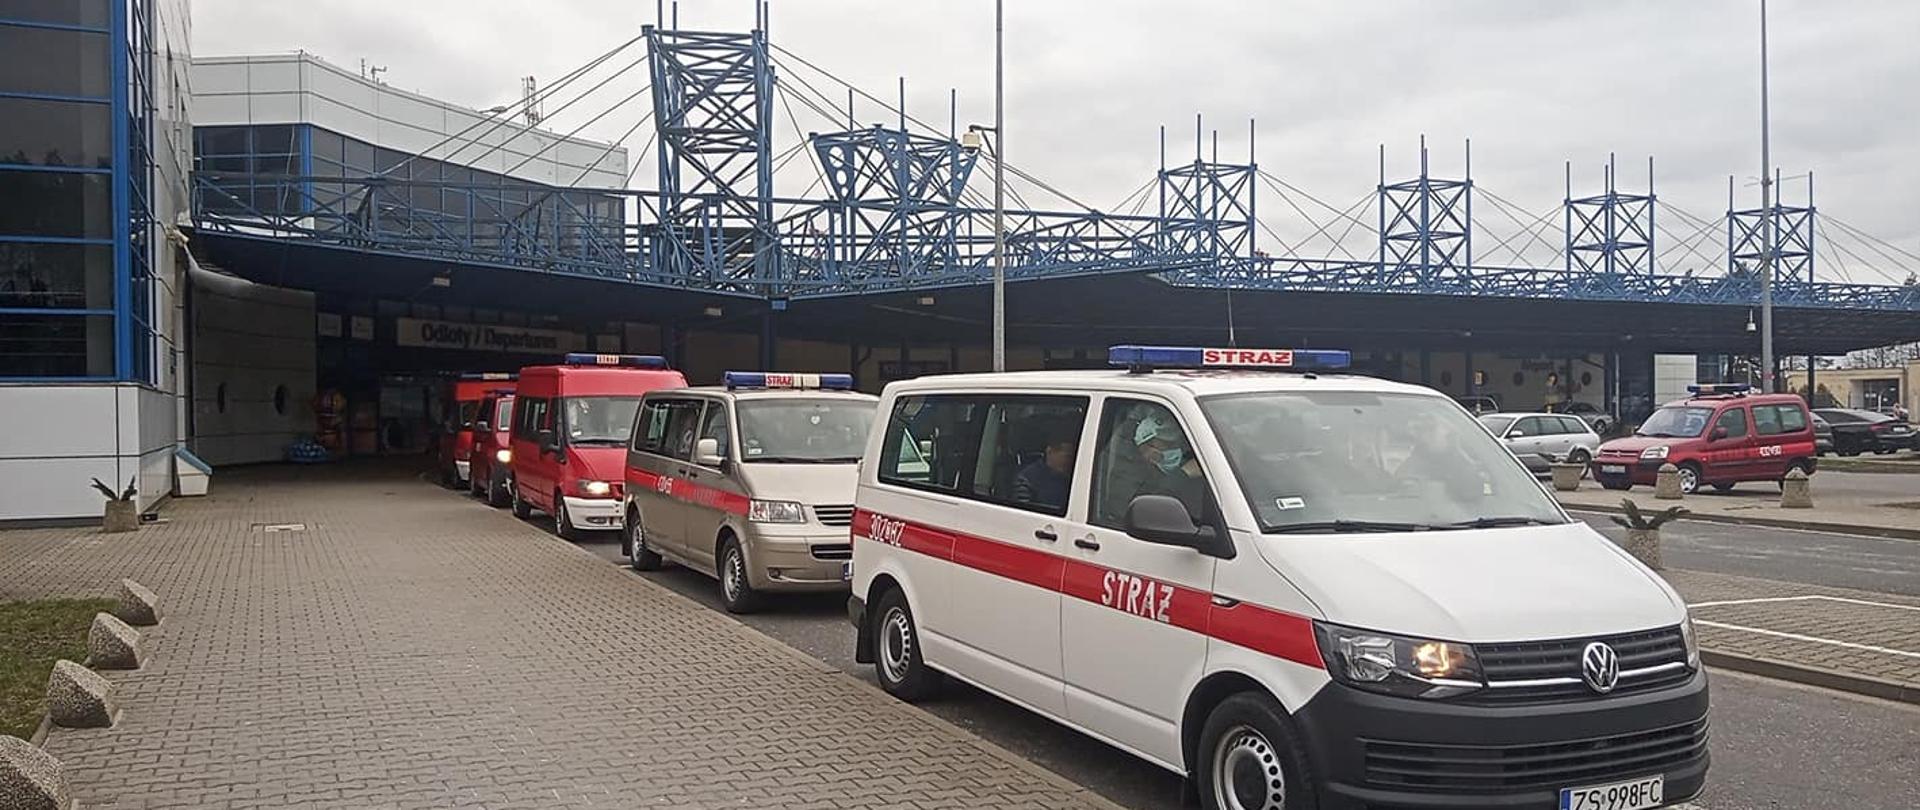 Port lotniczy Szczecin-Goleniów Pomoc strażaków w transporcie